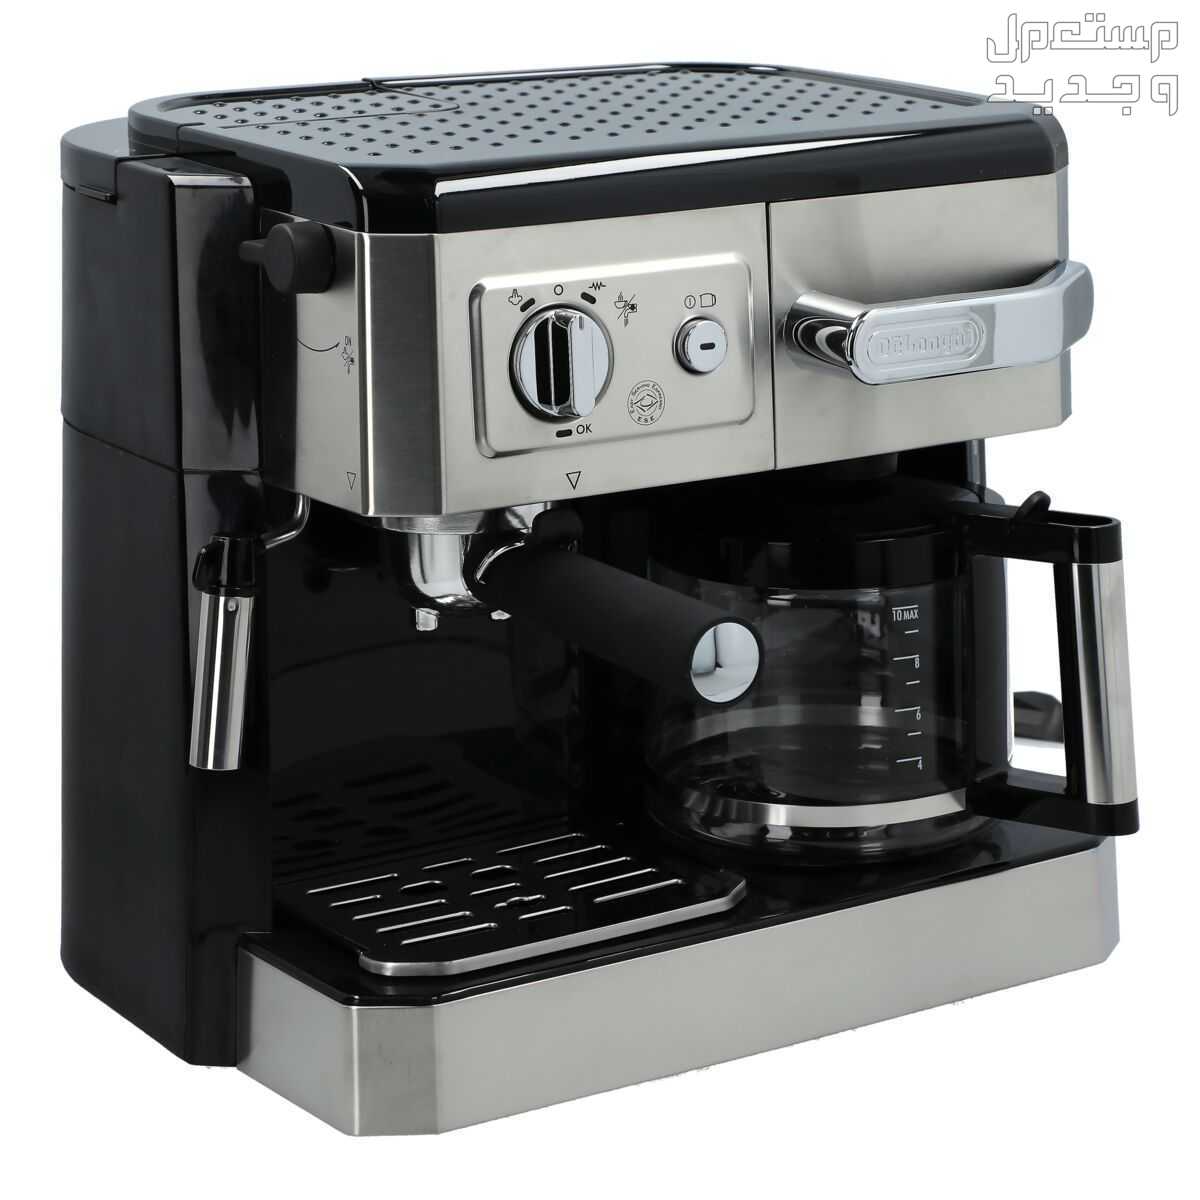 ماكينة صنع قهوة ااإسبريسو من ديلونجي 1725 واط - اسود 10 لتر BCO 420 في الرياض بسعر 800 ريال سعودي